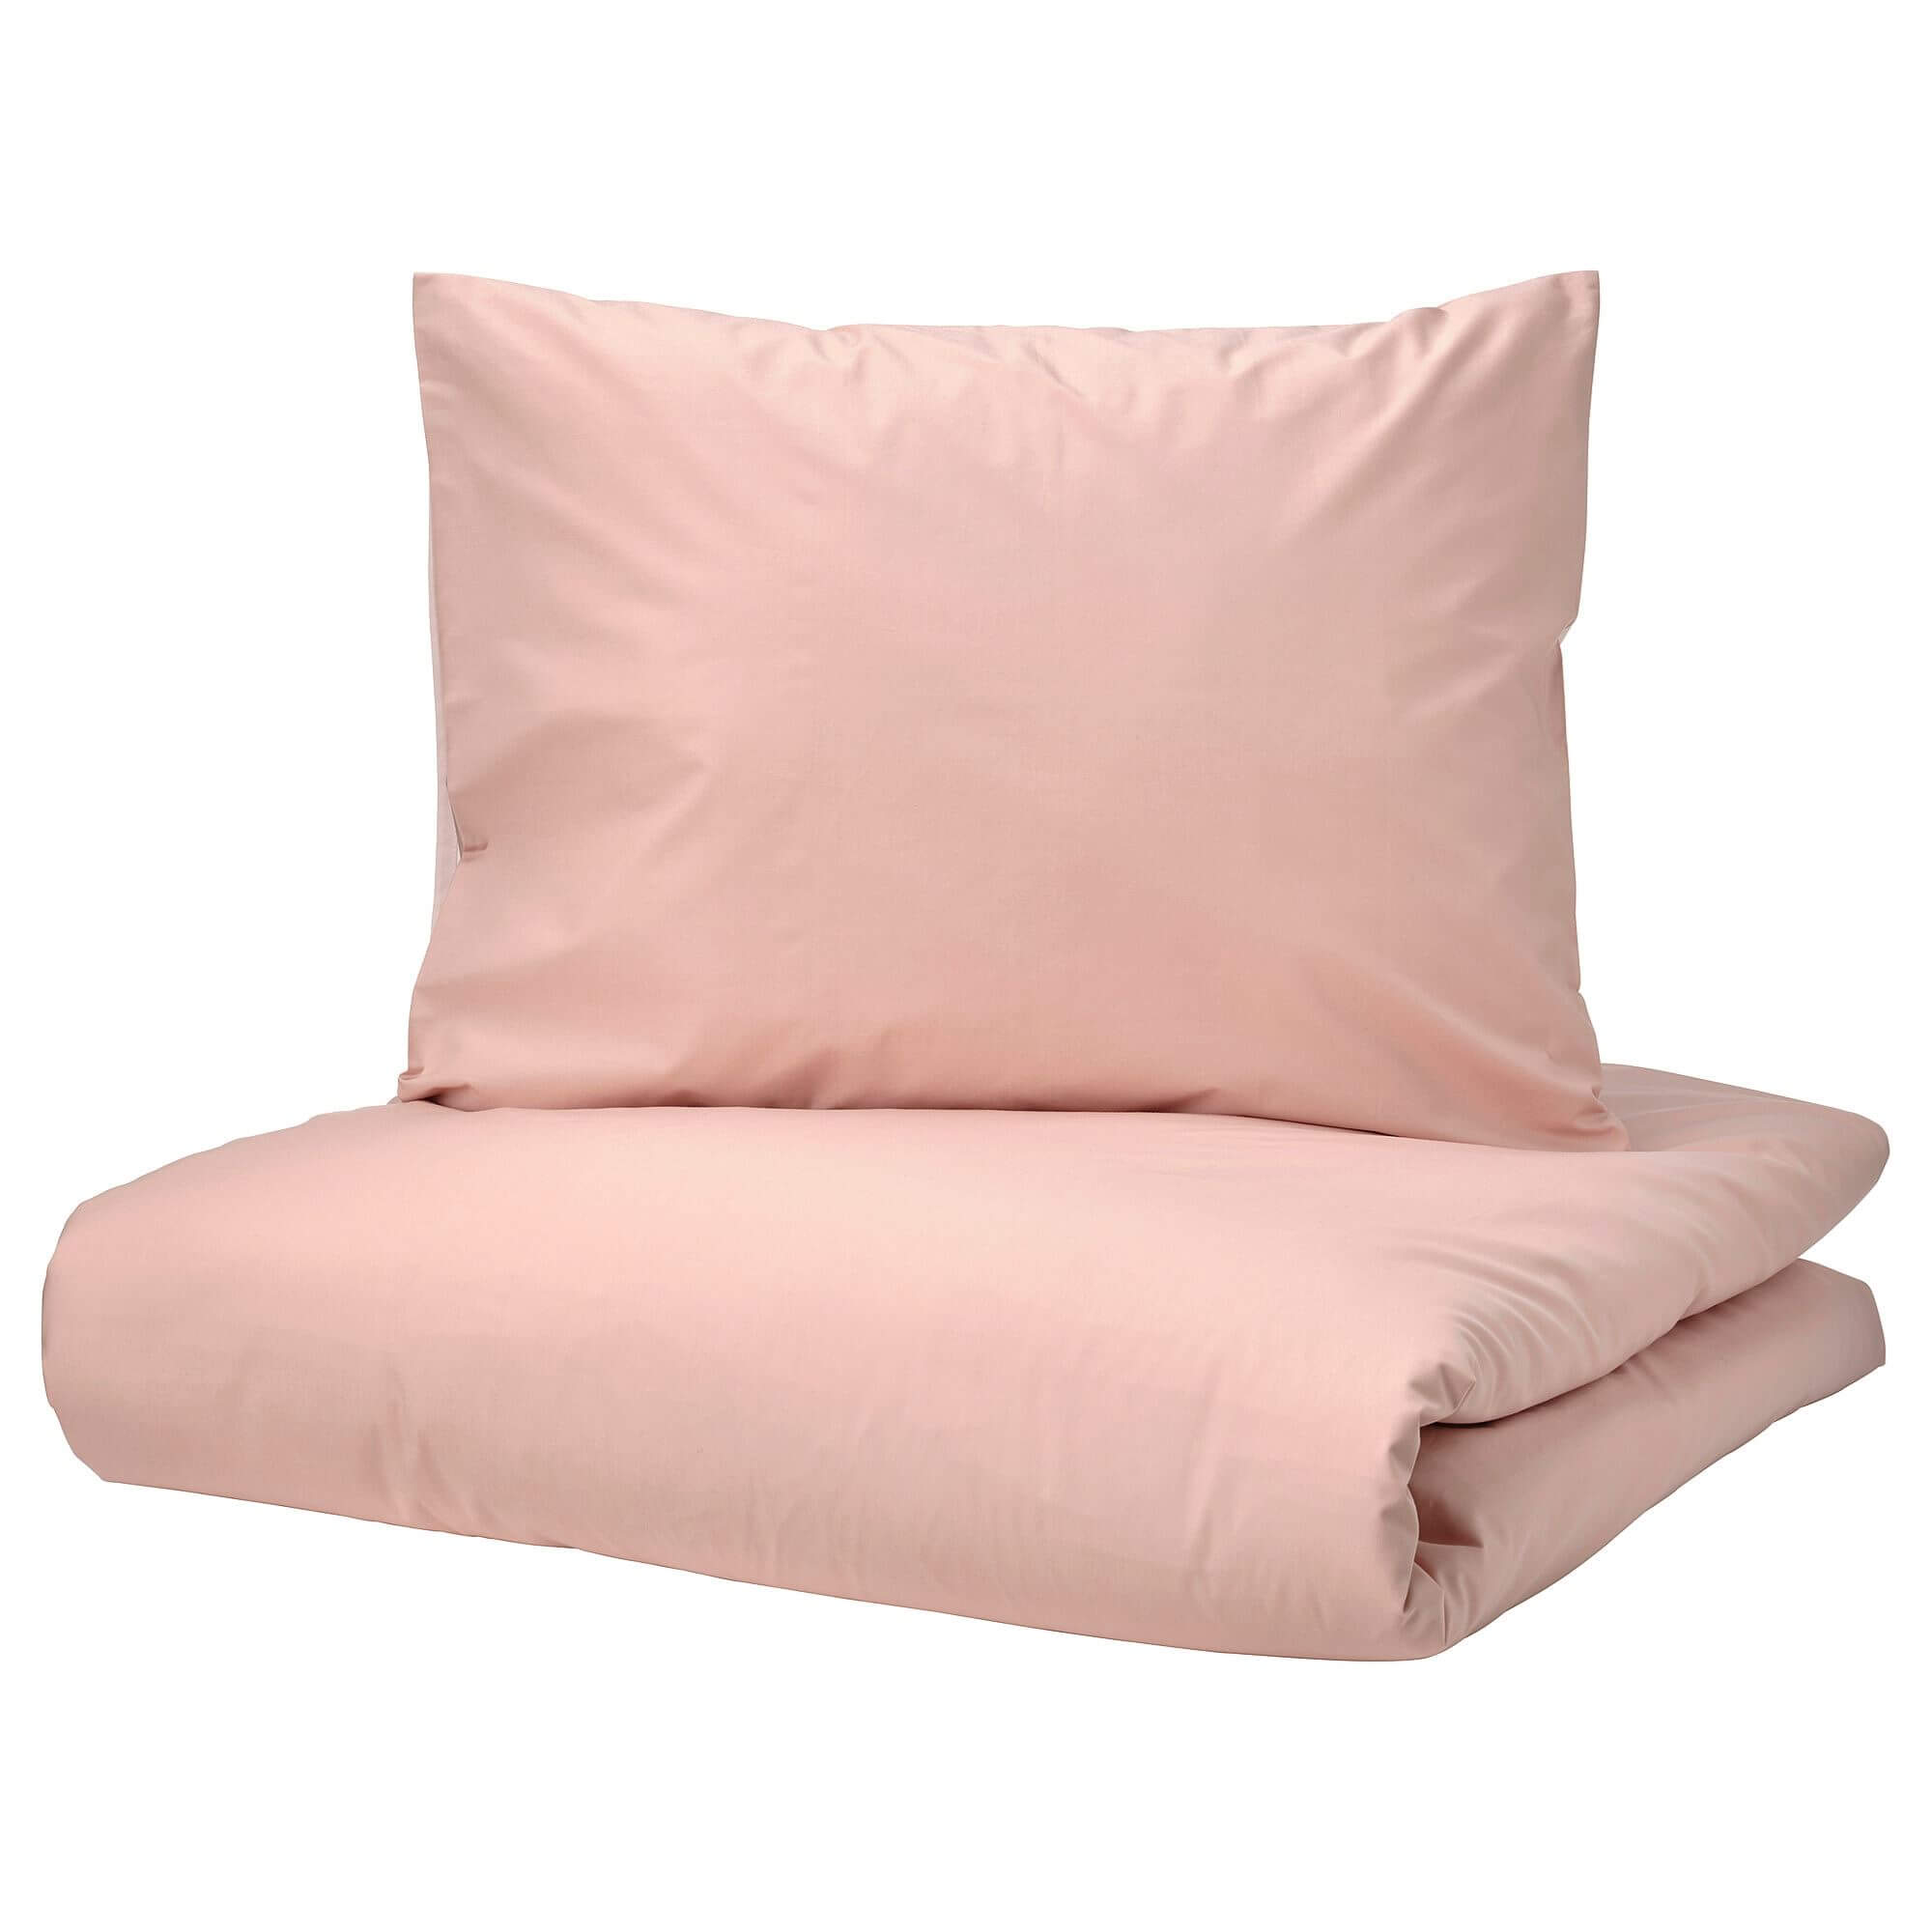 комплект постельного белья ikea jattevallmo 3 предмета бежевый темно серый Комплект постельного белья Ikea Strandtall, 3 предмета, розовый